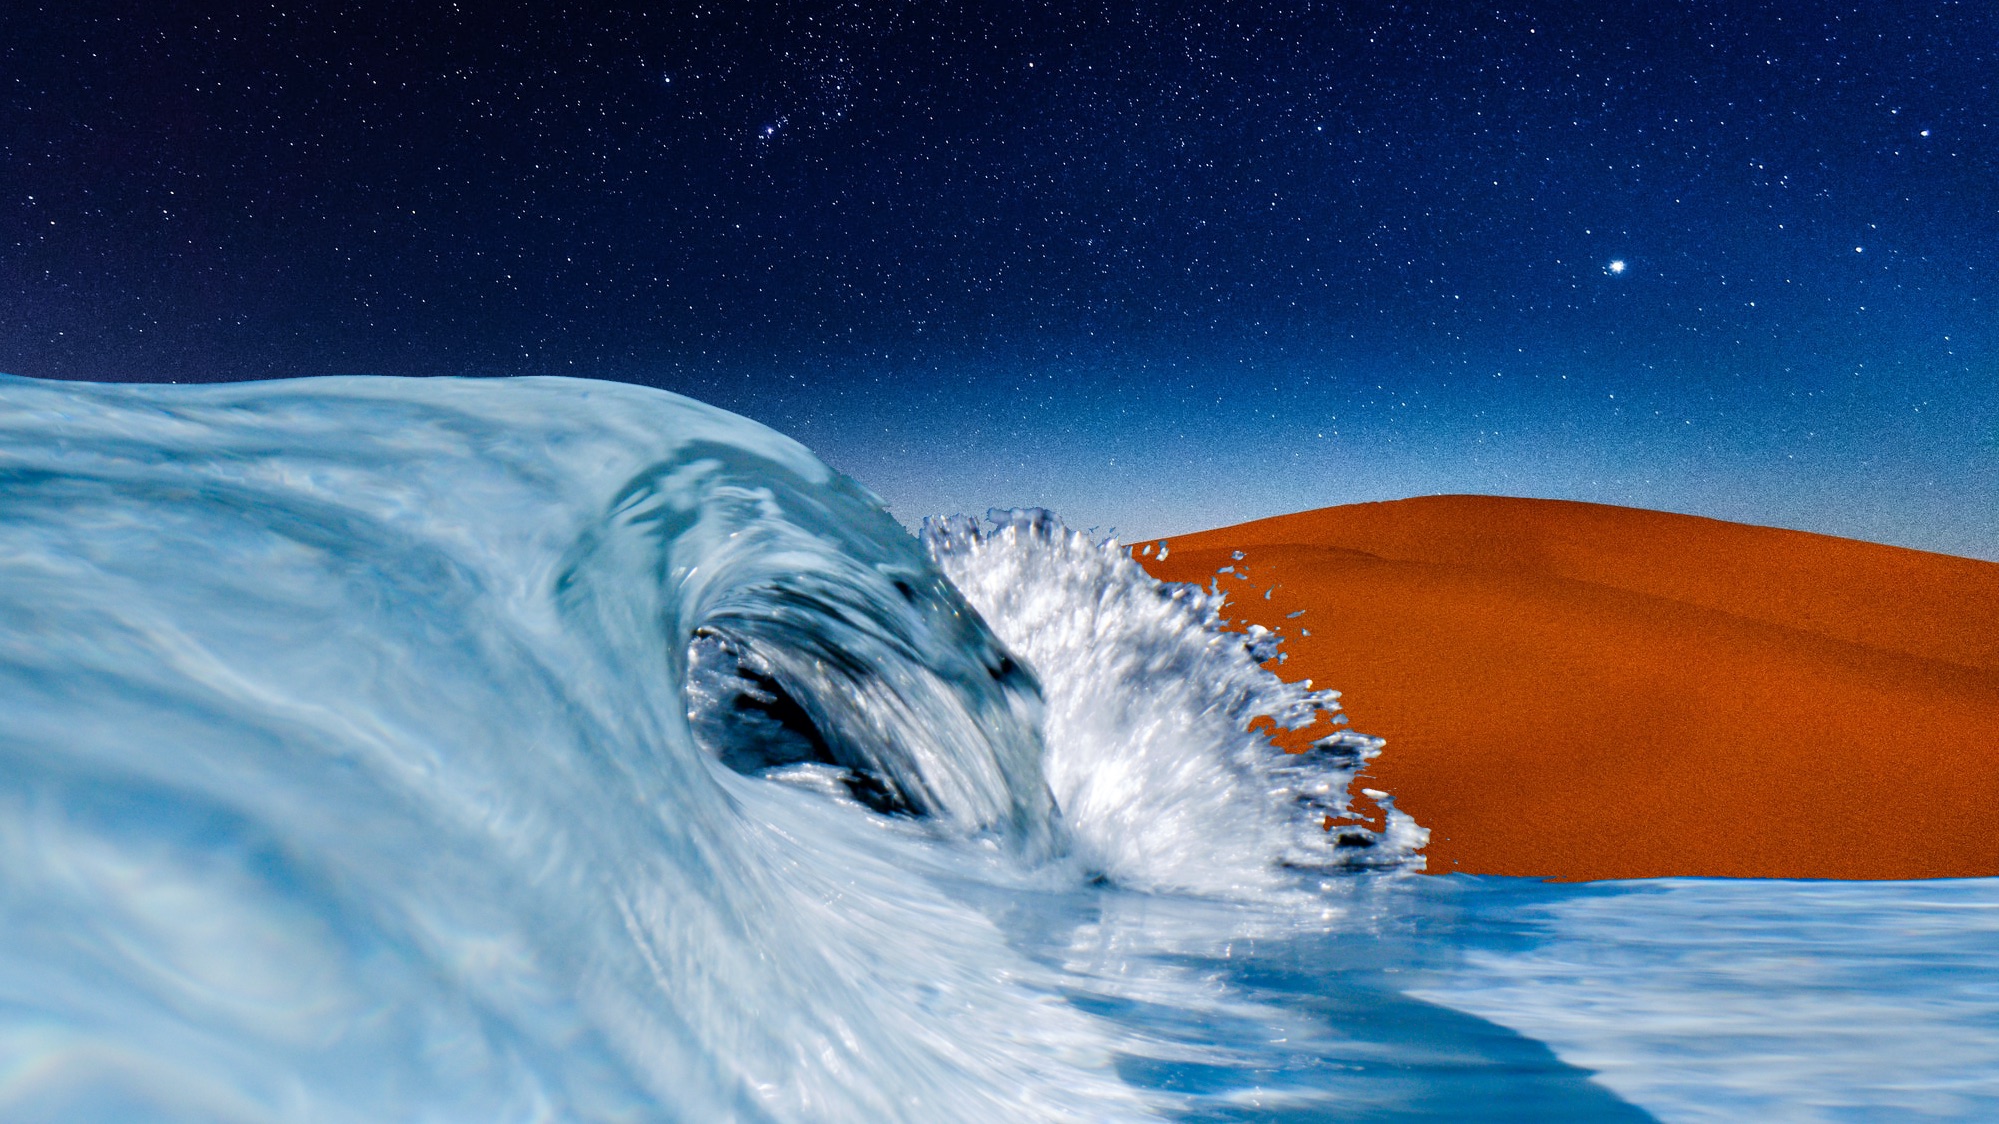 artist rendering of desert wave pool